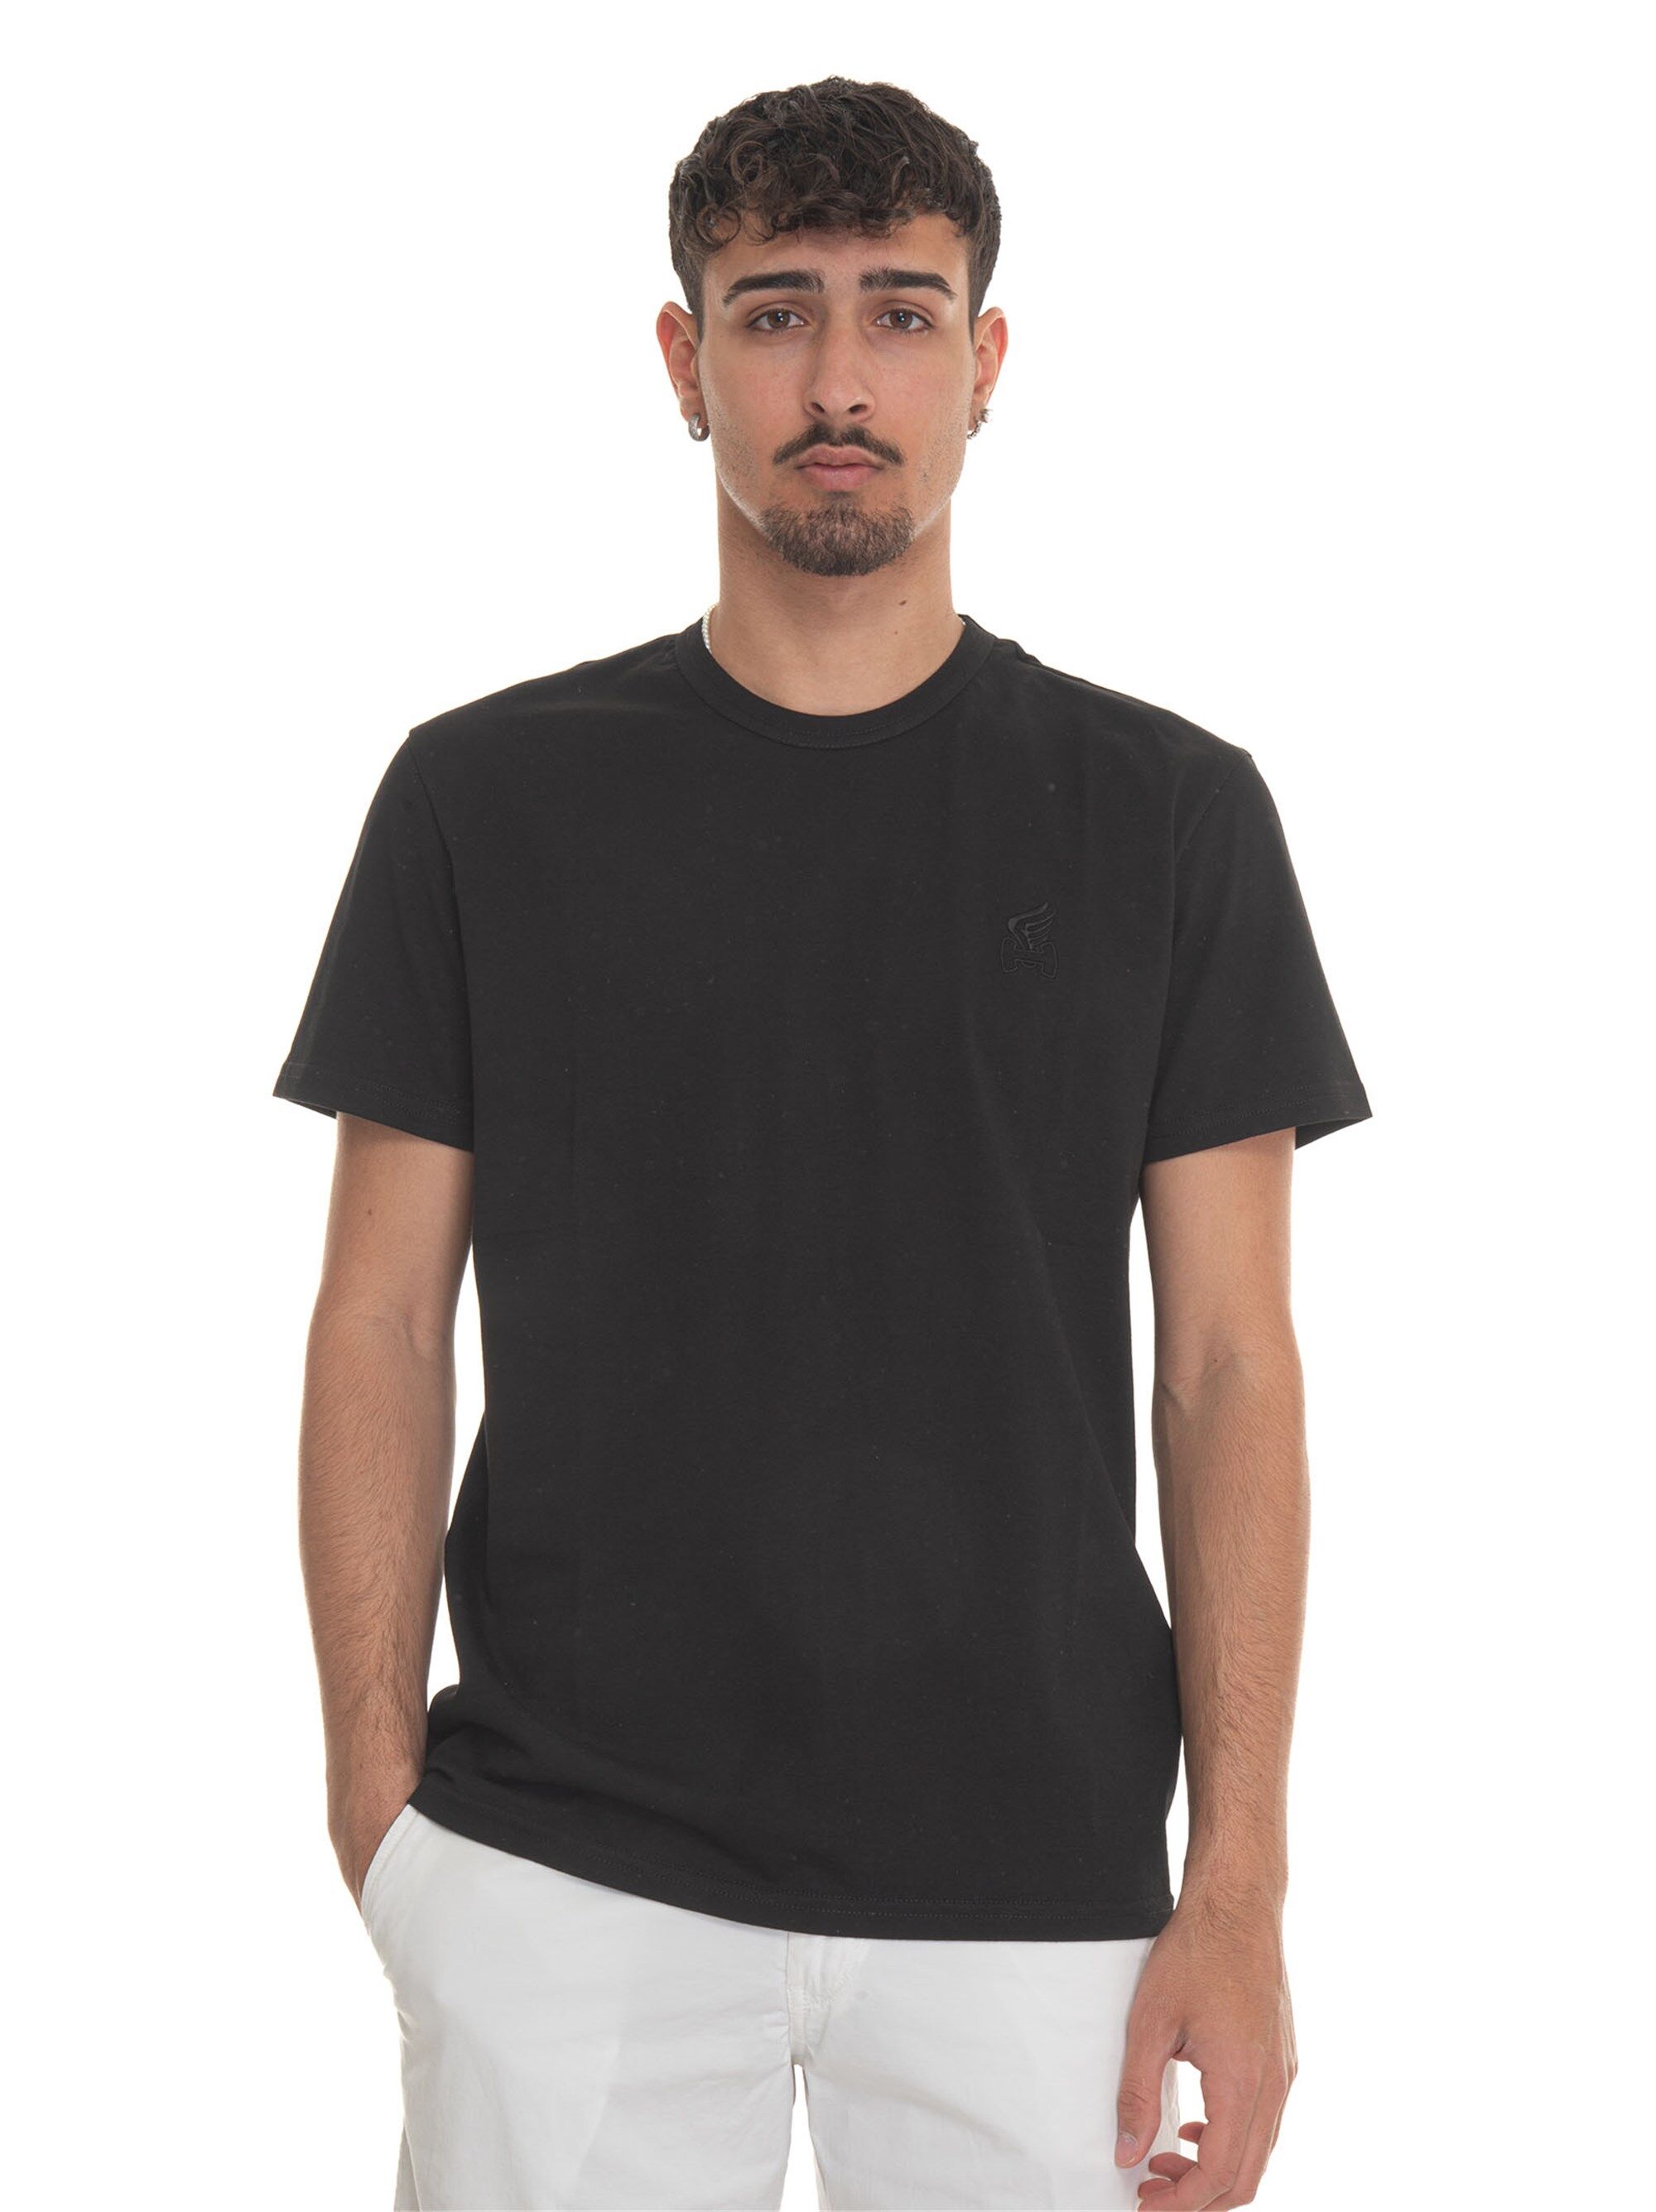 Hogan T-shirt girocollo mezza manica Nero Uomo S